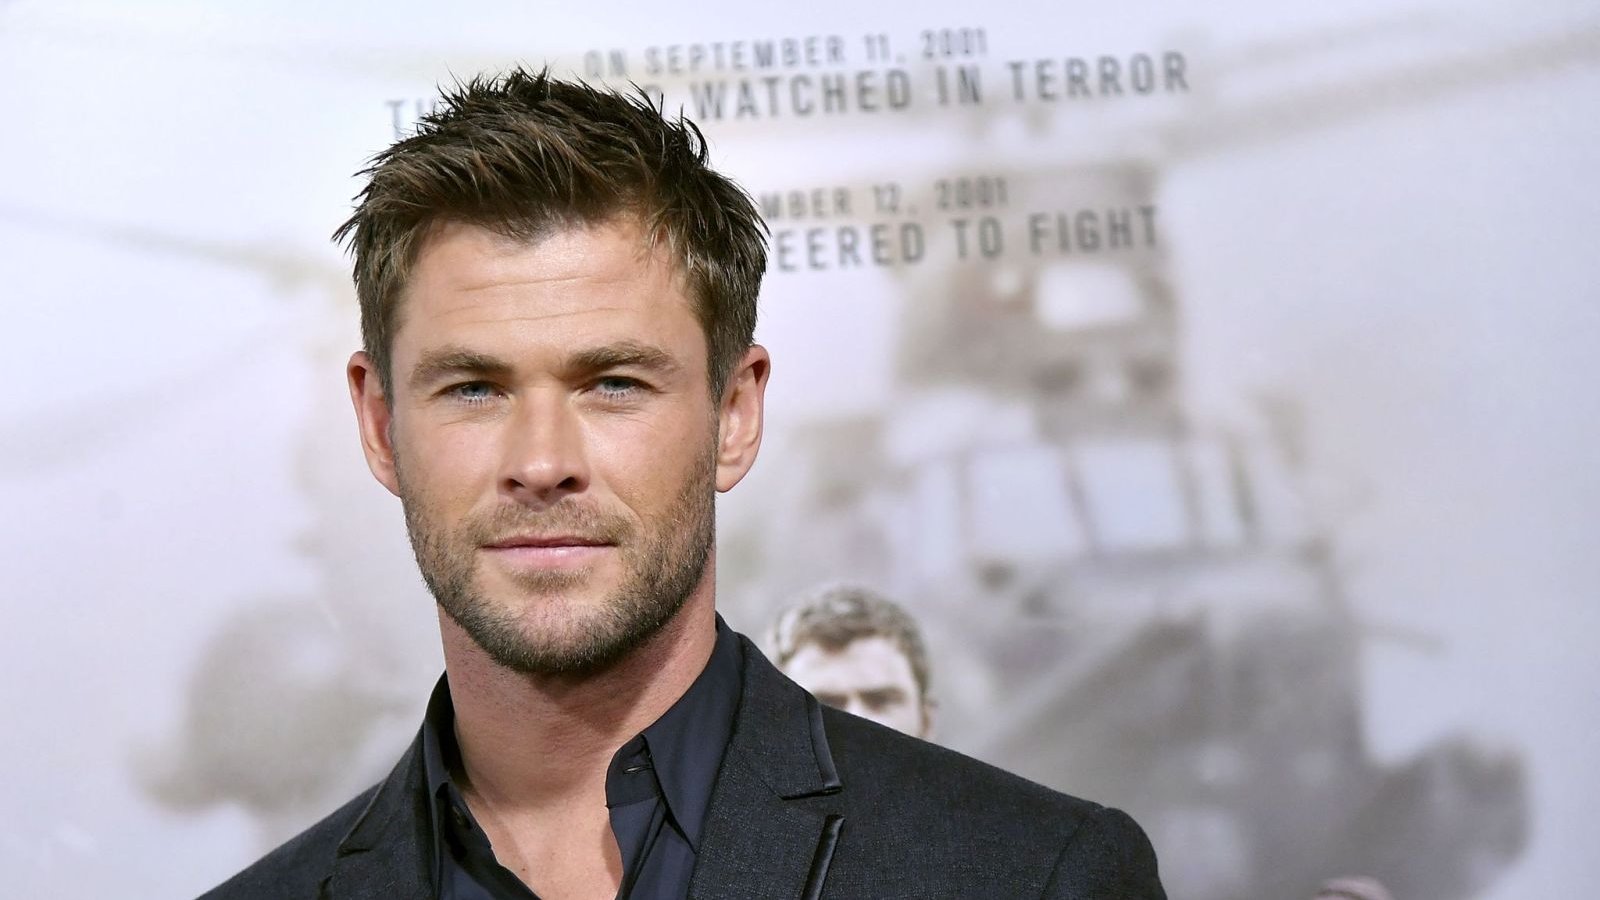 Chris Hemsworth bacchetta i registi che hanno criticato l'MCU: 'Anche loro non hanno imbroccato tutti i film'